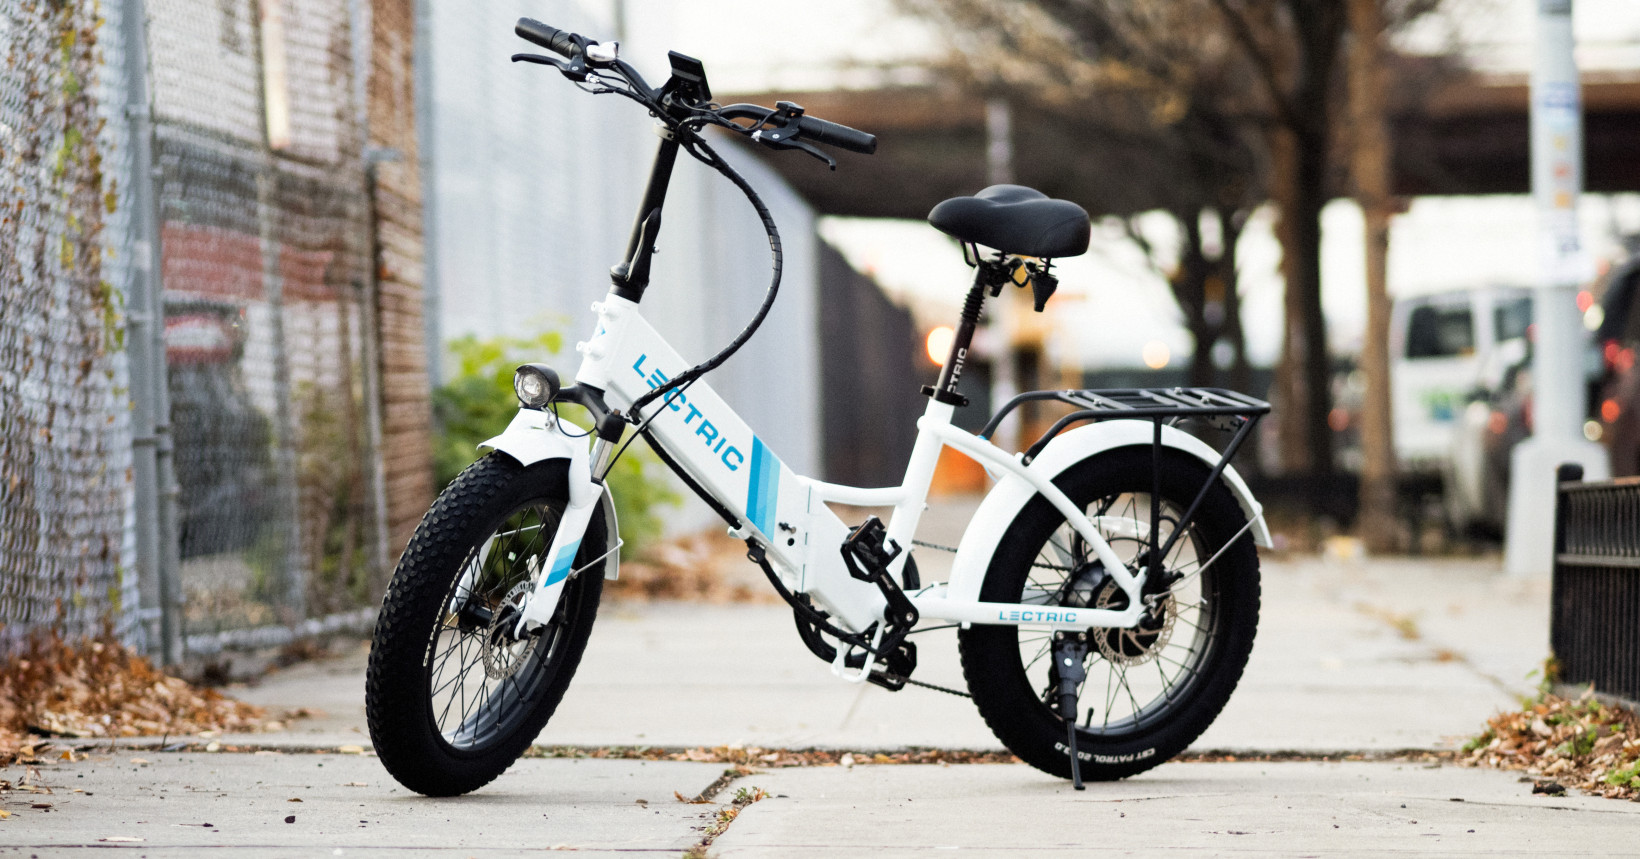 Découvrez notre liste des meilleurs vélos électriques en 2022. Budget, confort, type d'utilisateur, nous avons pensé à tout.